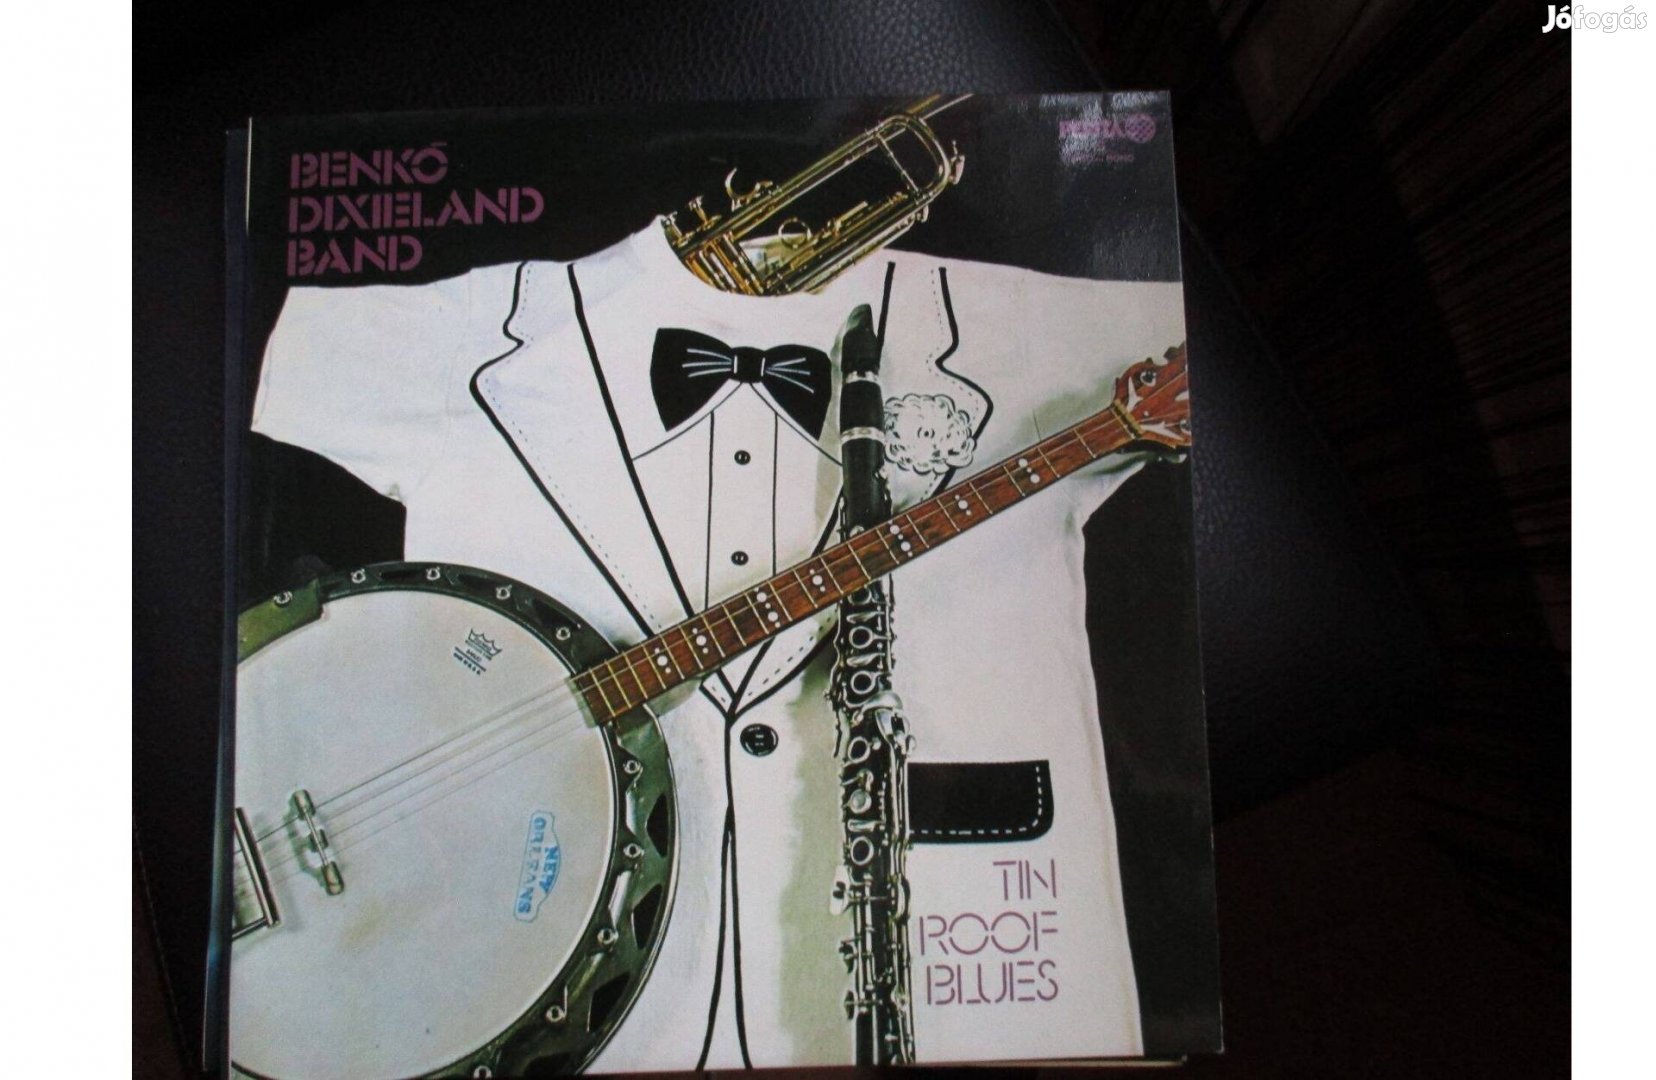 Benkó Dixieland Band bakelit hanglemezek eladók